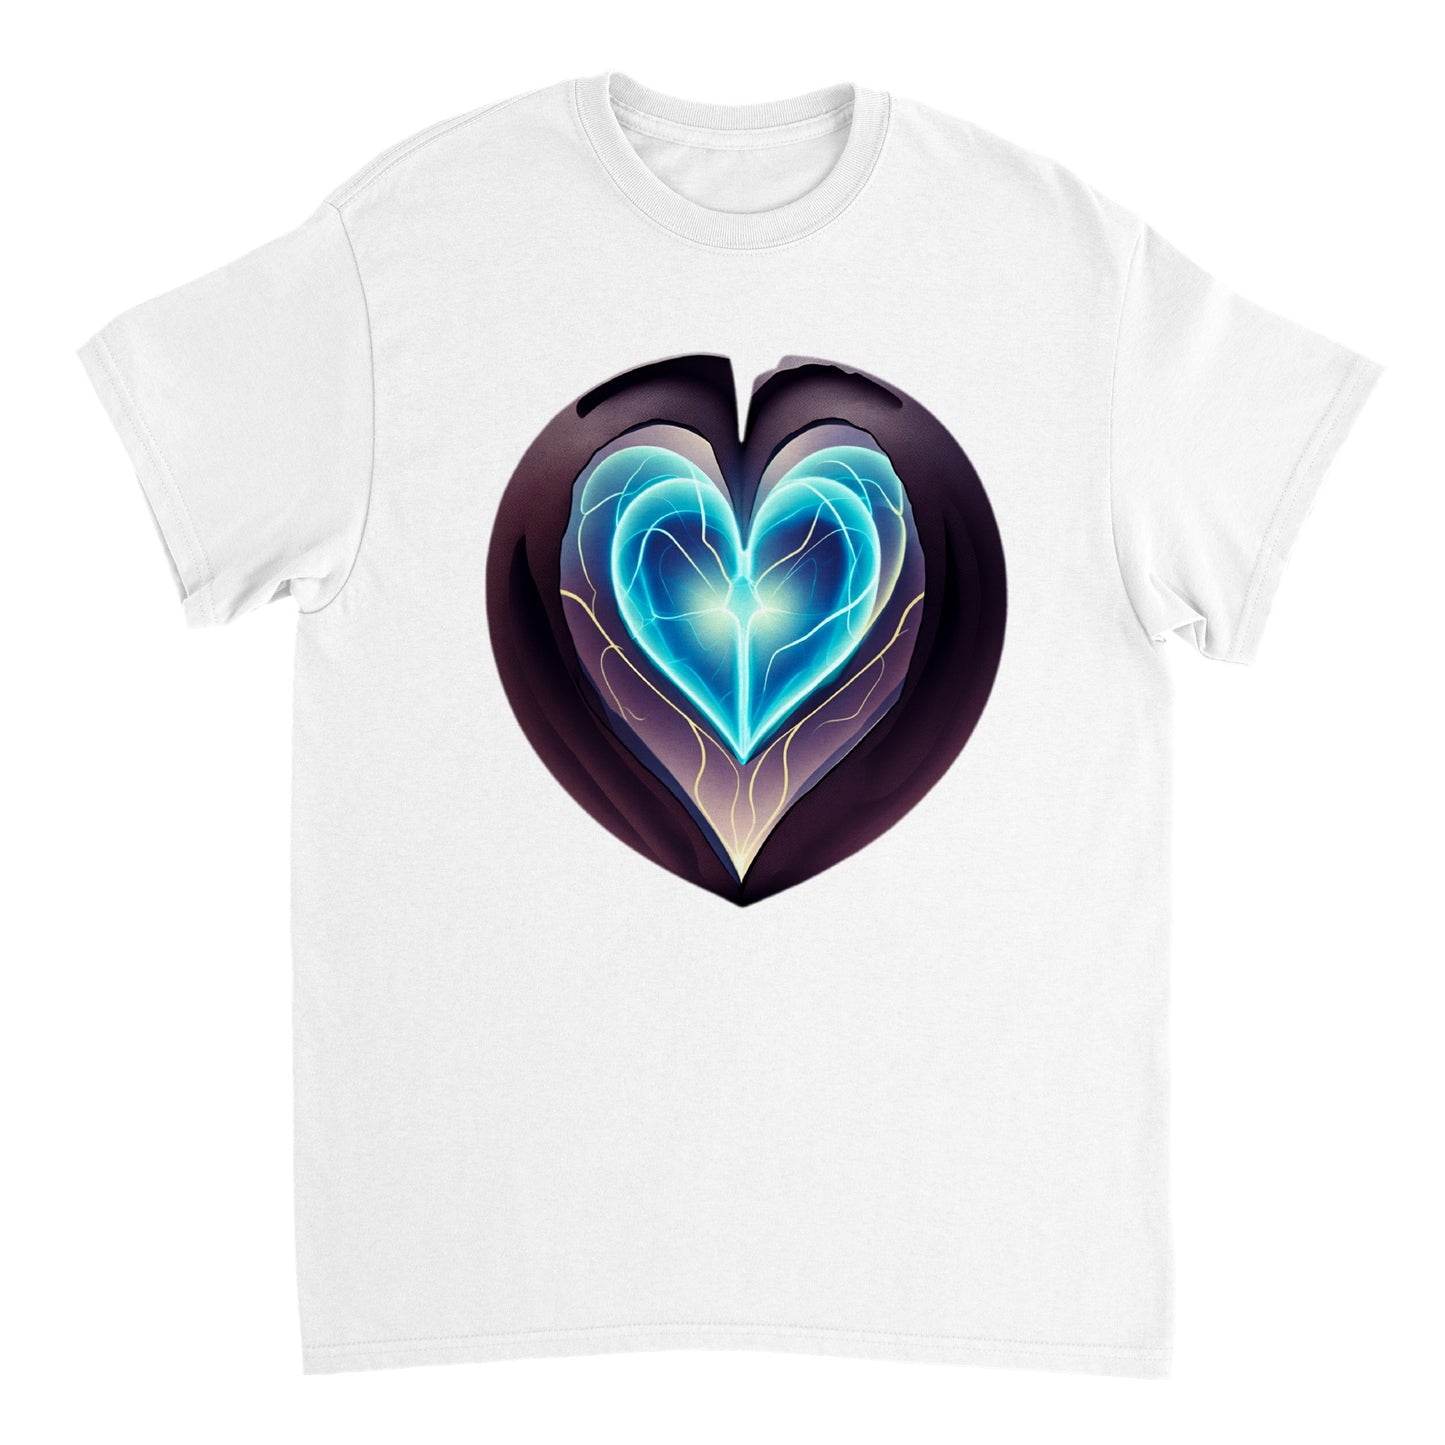 Love Heart - Heavyweight Unisex Crewneck T-shirt 99